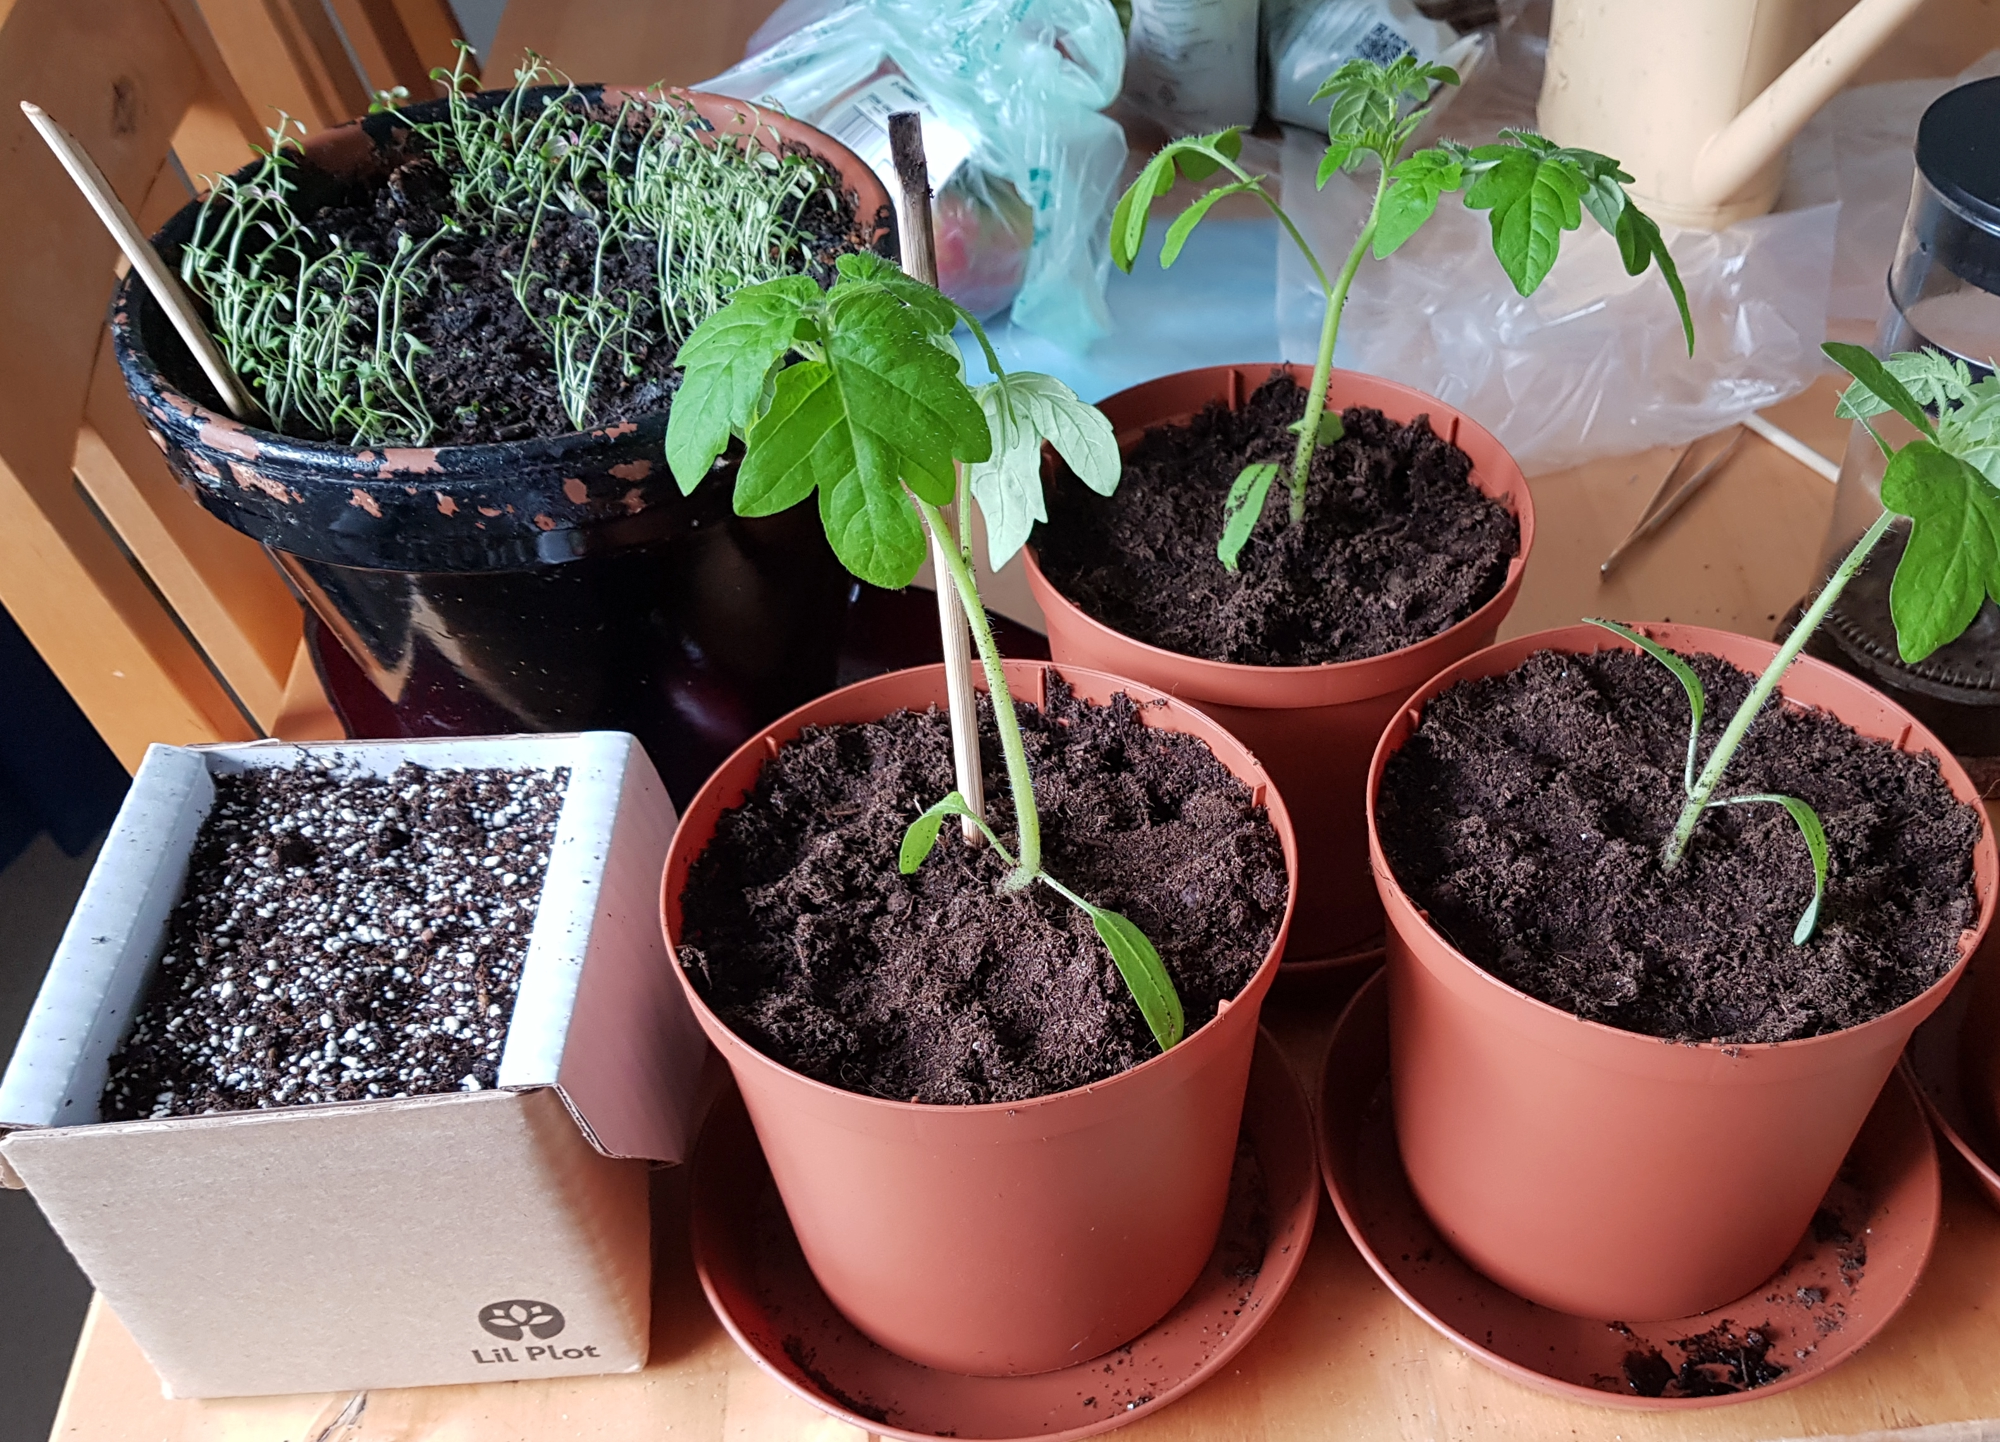 Tomaatin taimia, Lil Plot pahviruukku eukalyptuksen kasvattamiseen ja villamaisia pieniä timjamin alkuja ruukuissa keittiön pöydällä.